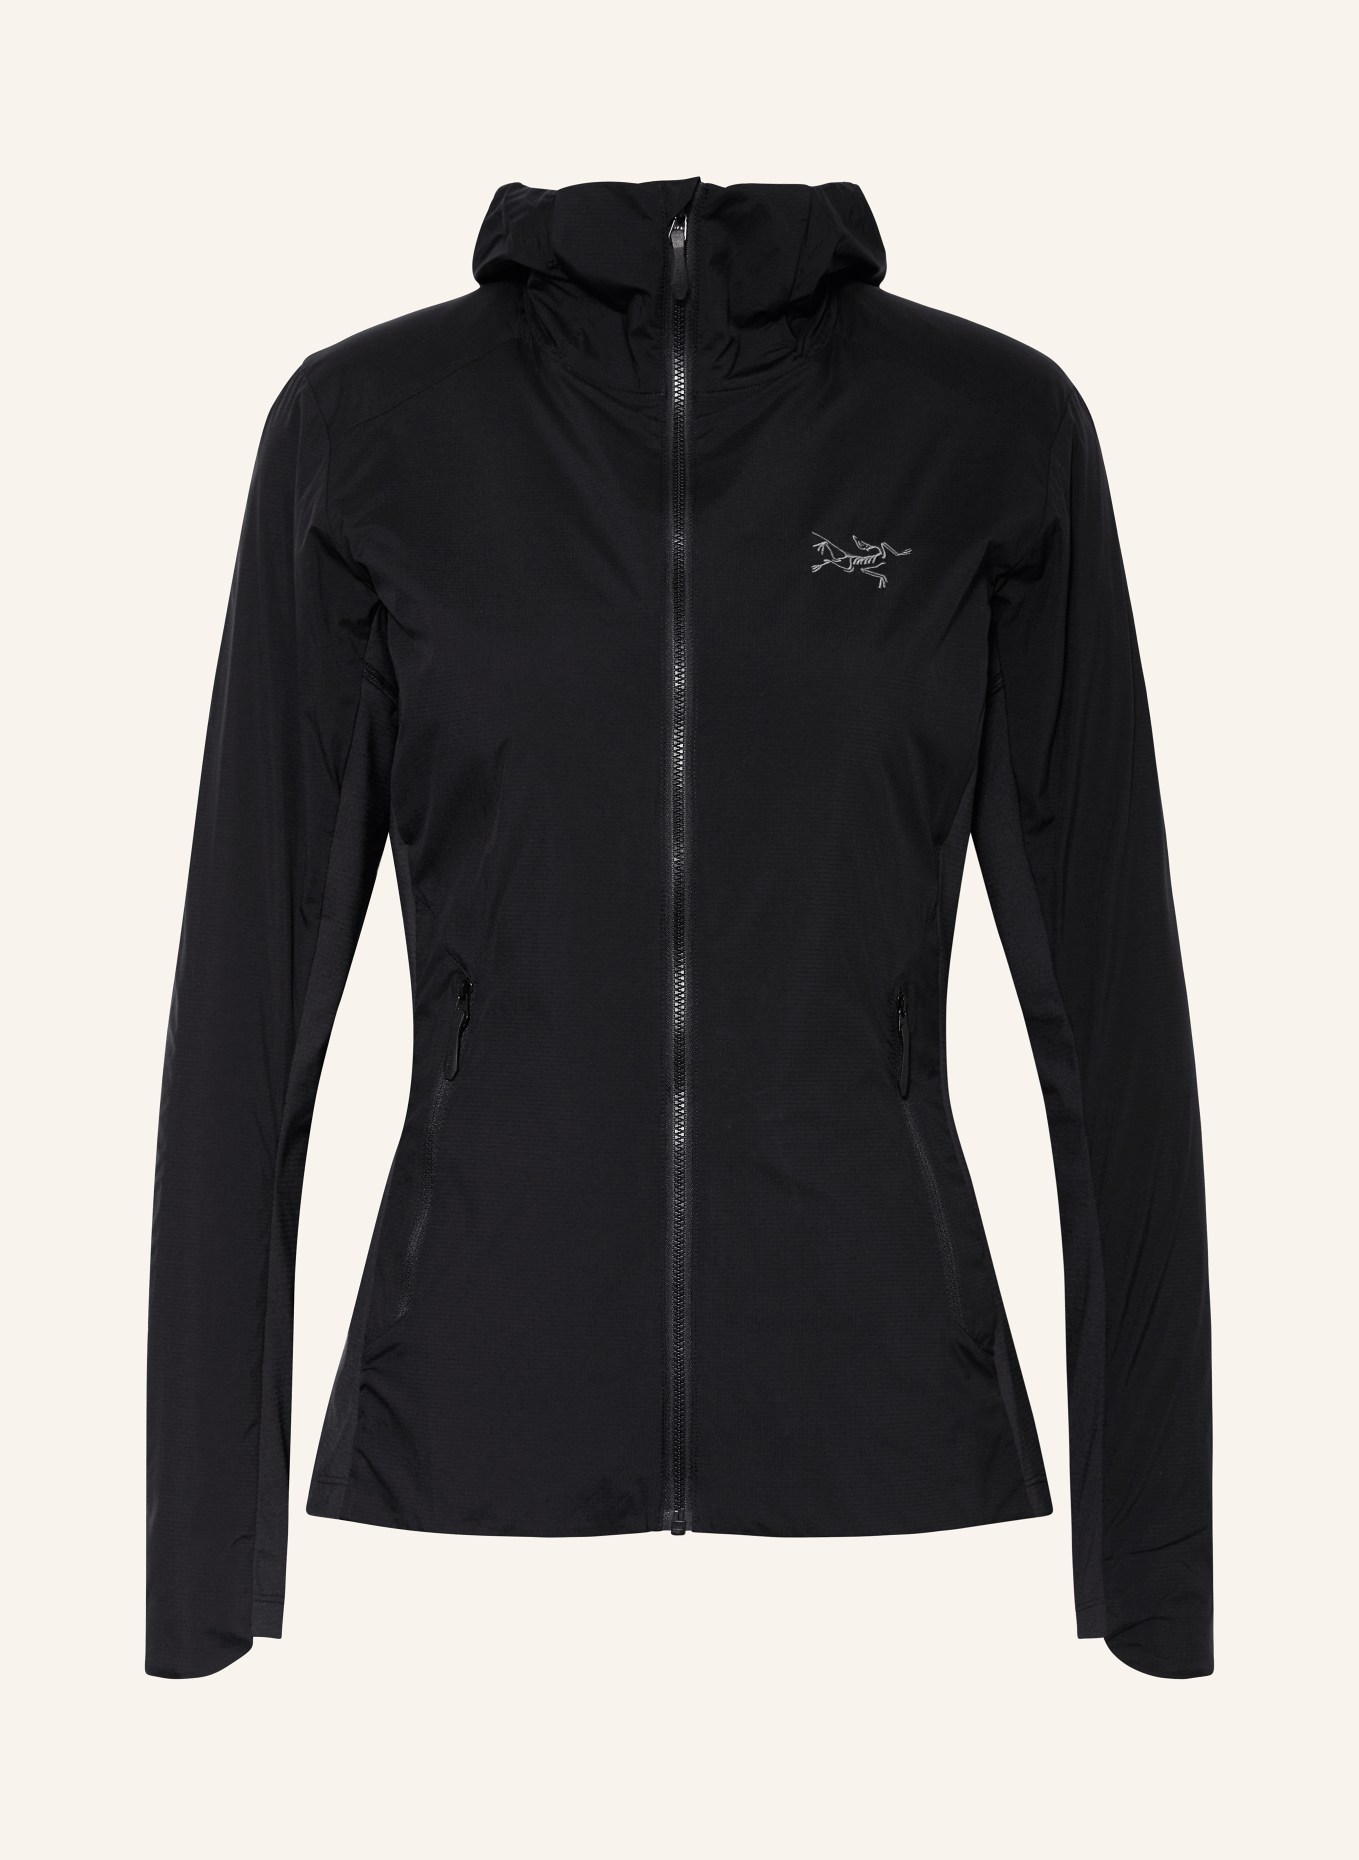 ARC'TERYX Outdoor jacket ATOM, Color: BLACK (Image 1)